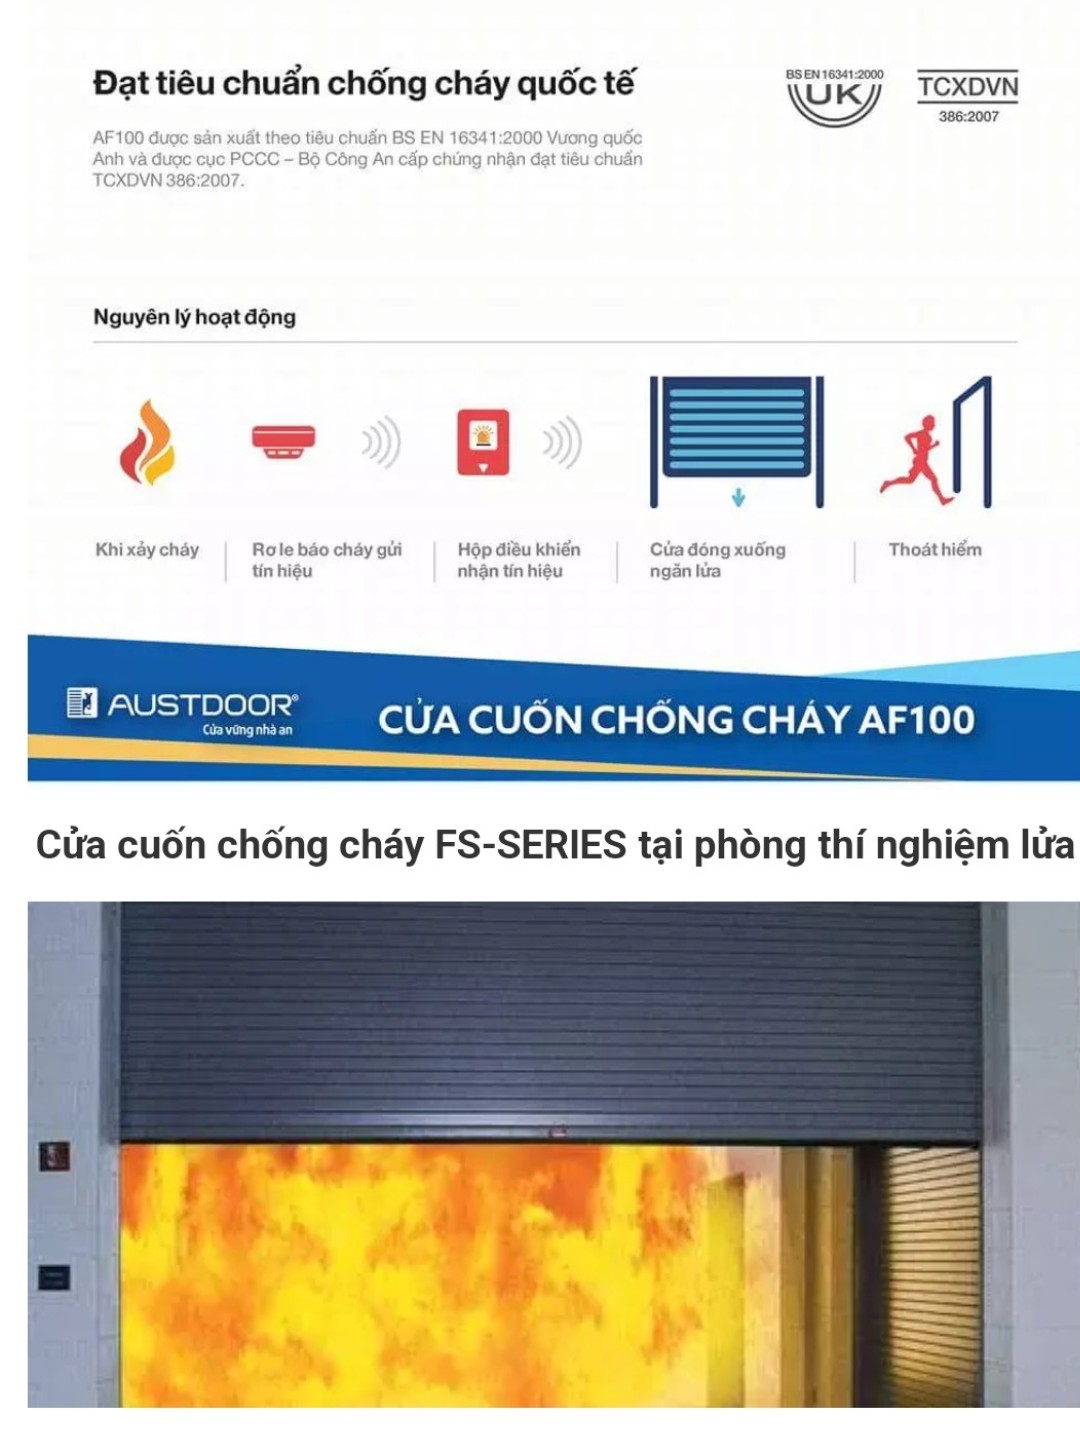 cua-cuon-chong-chay-af100